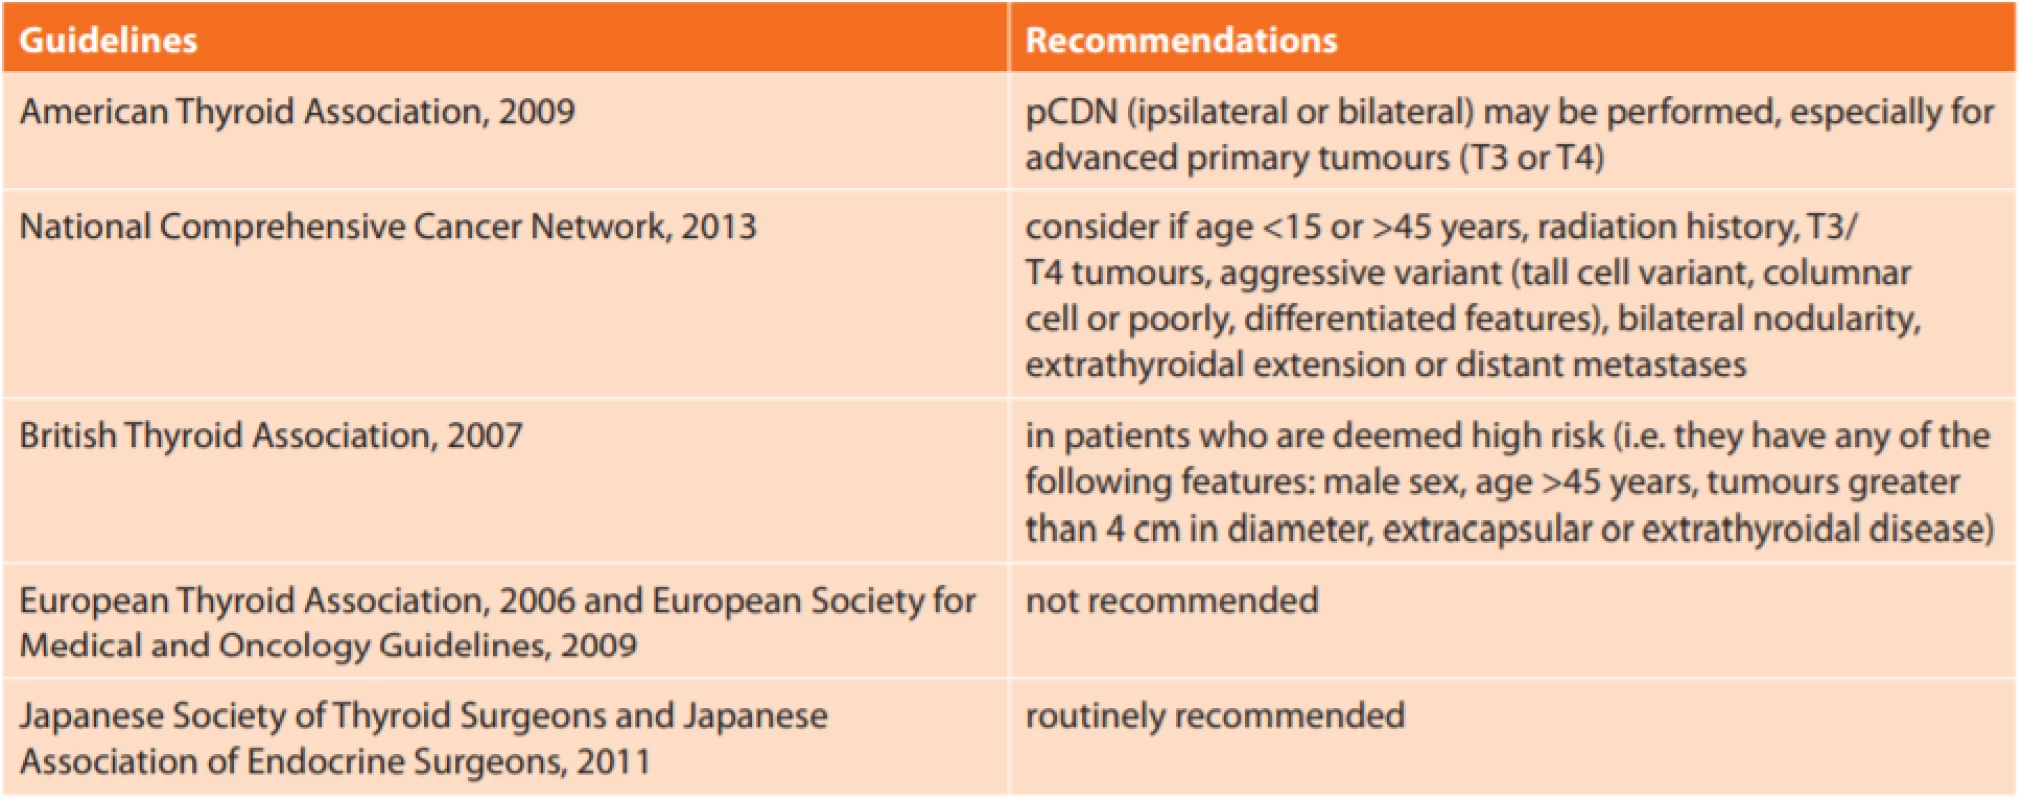  Doporučení jednotlivých odborných thyreoidálních společností ke krční lymfadenektomii [13]<br>
Tab. 2: Summary of guidelines for central neck dissection [13]